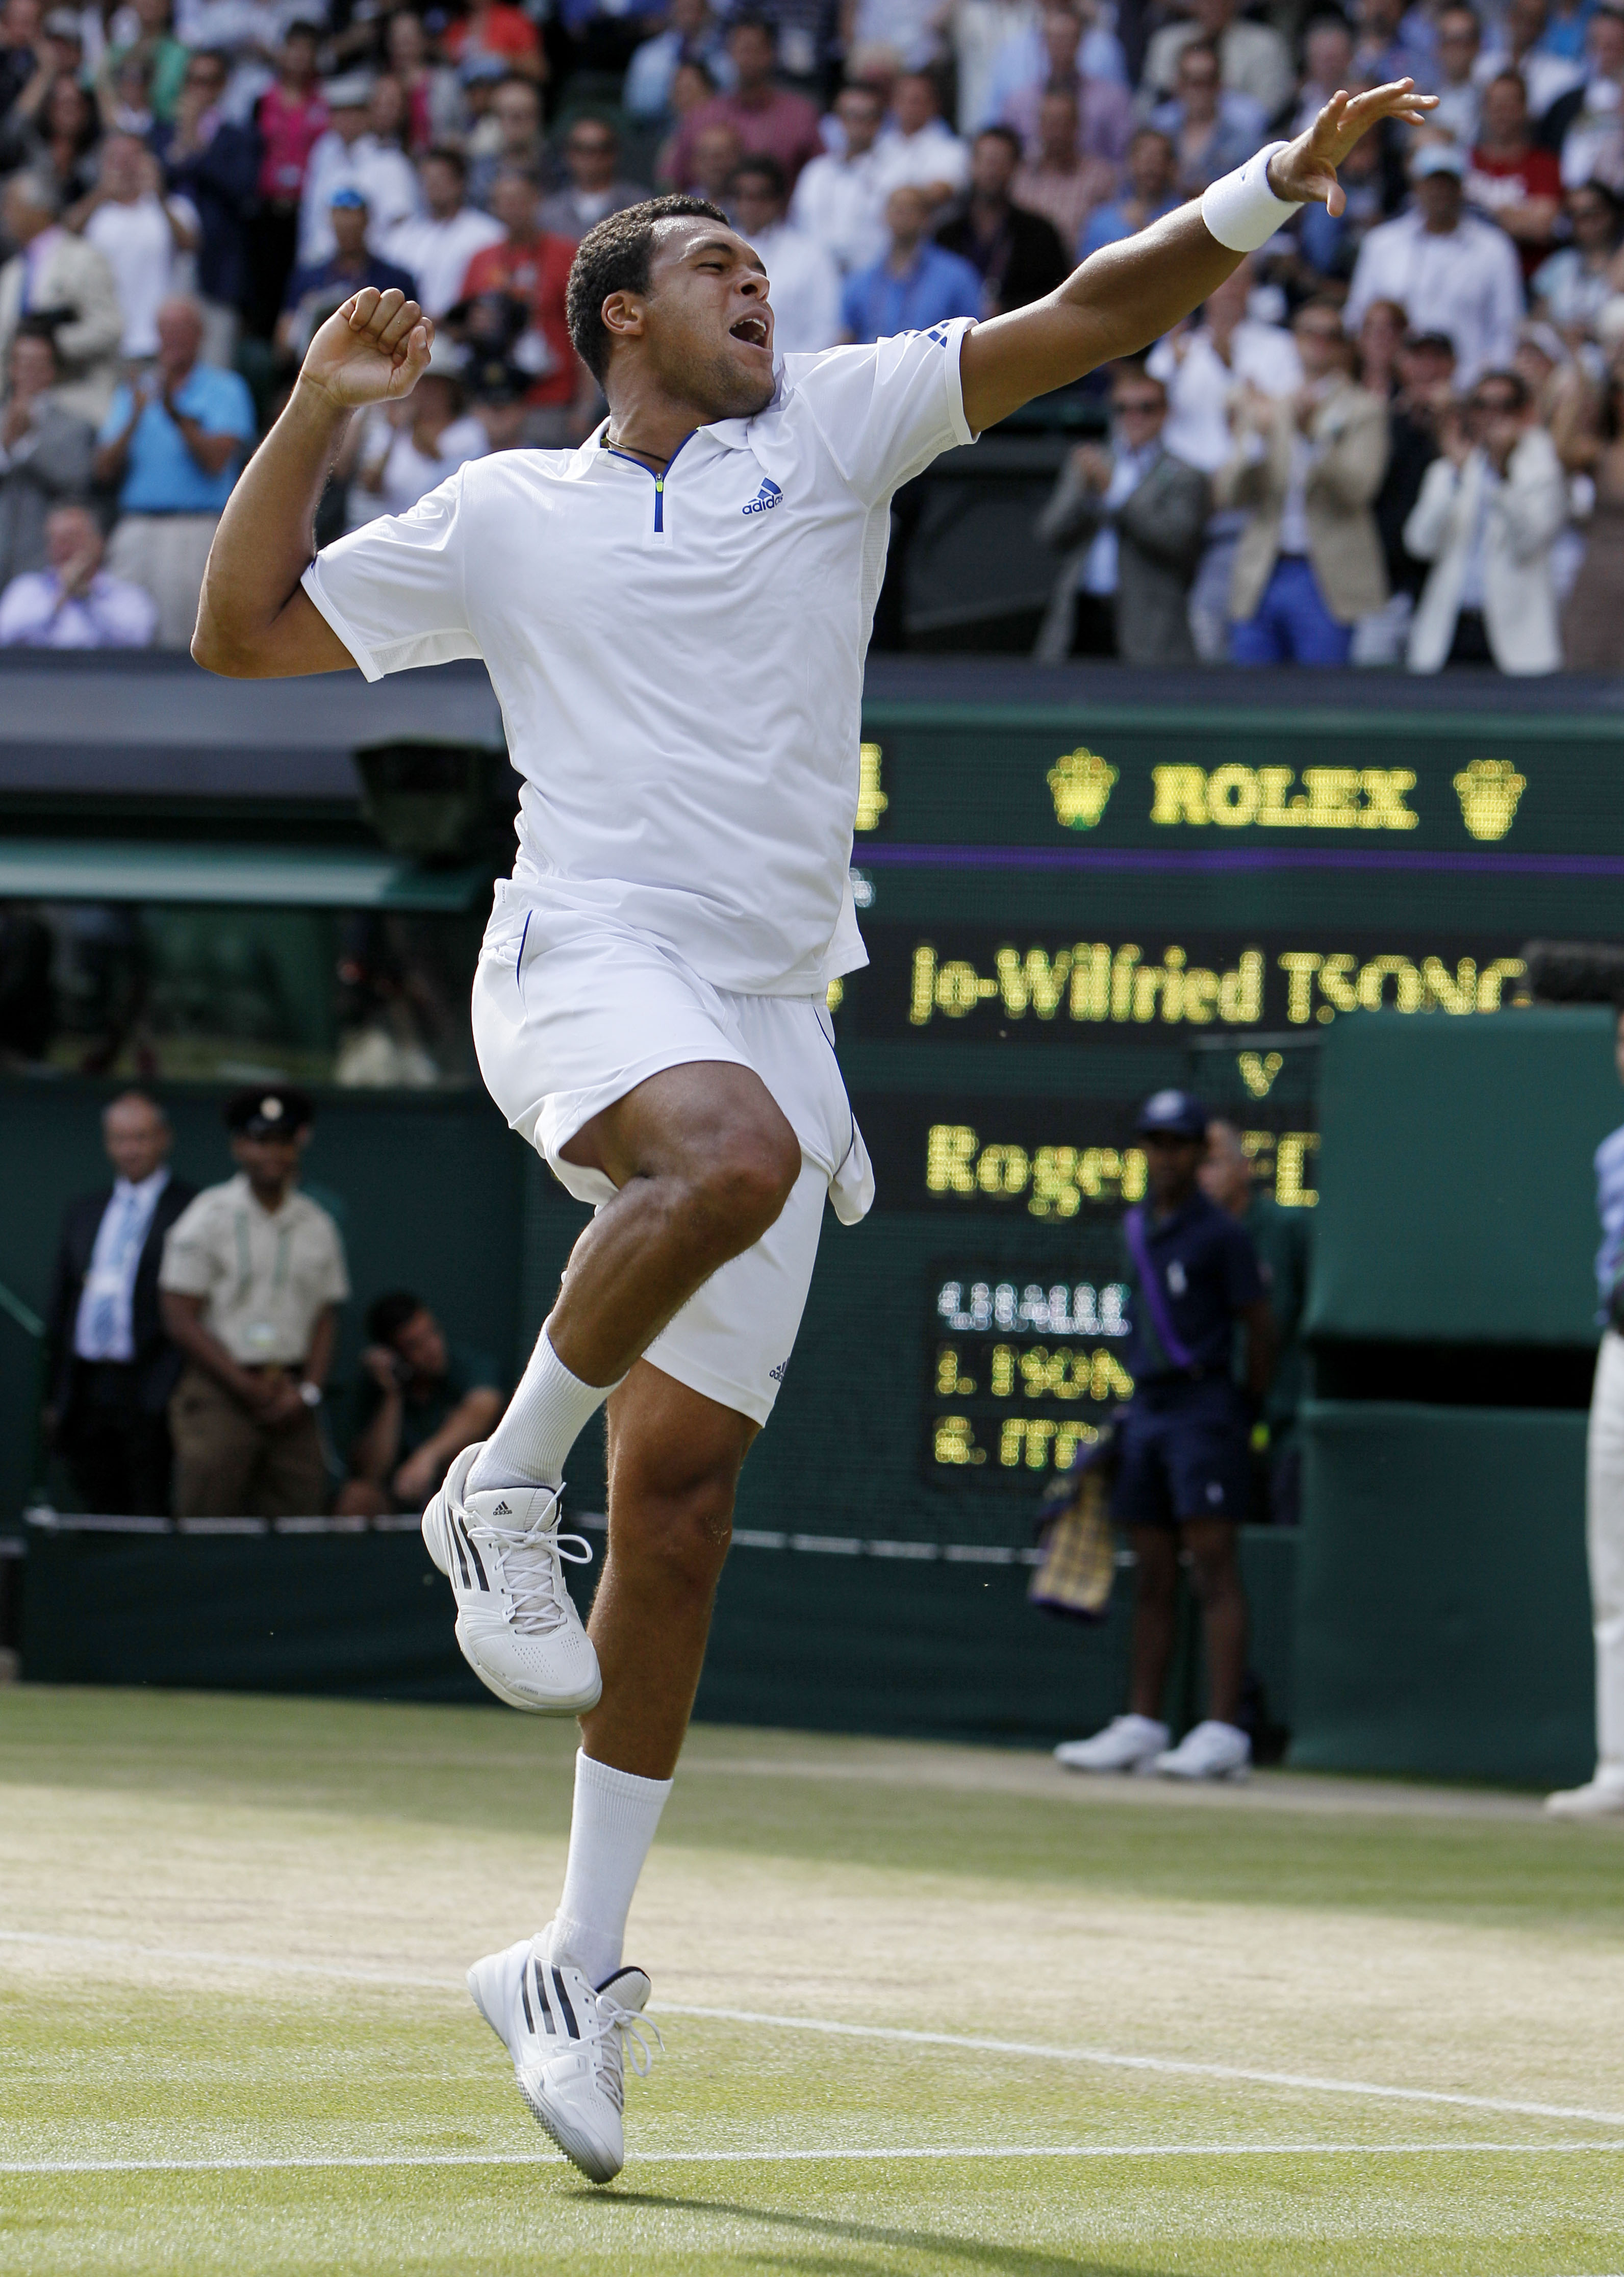 Wimbledon, Novak Djokovic, Tsonga, Rafael Nadal, Robin Soderling, Federer, Roger Federer, Björn Borg, Tennis